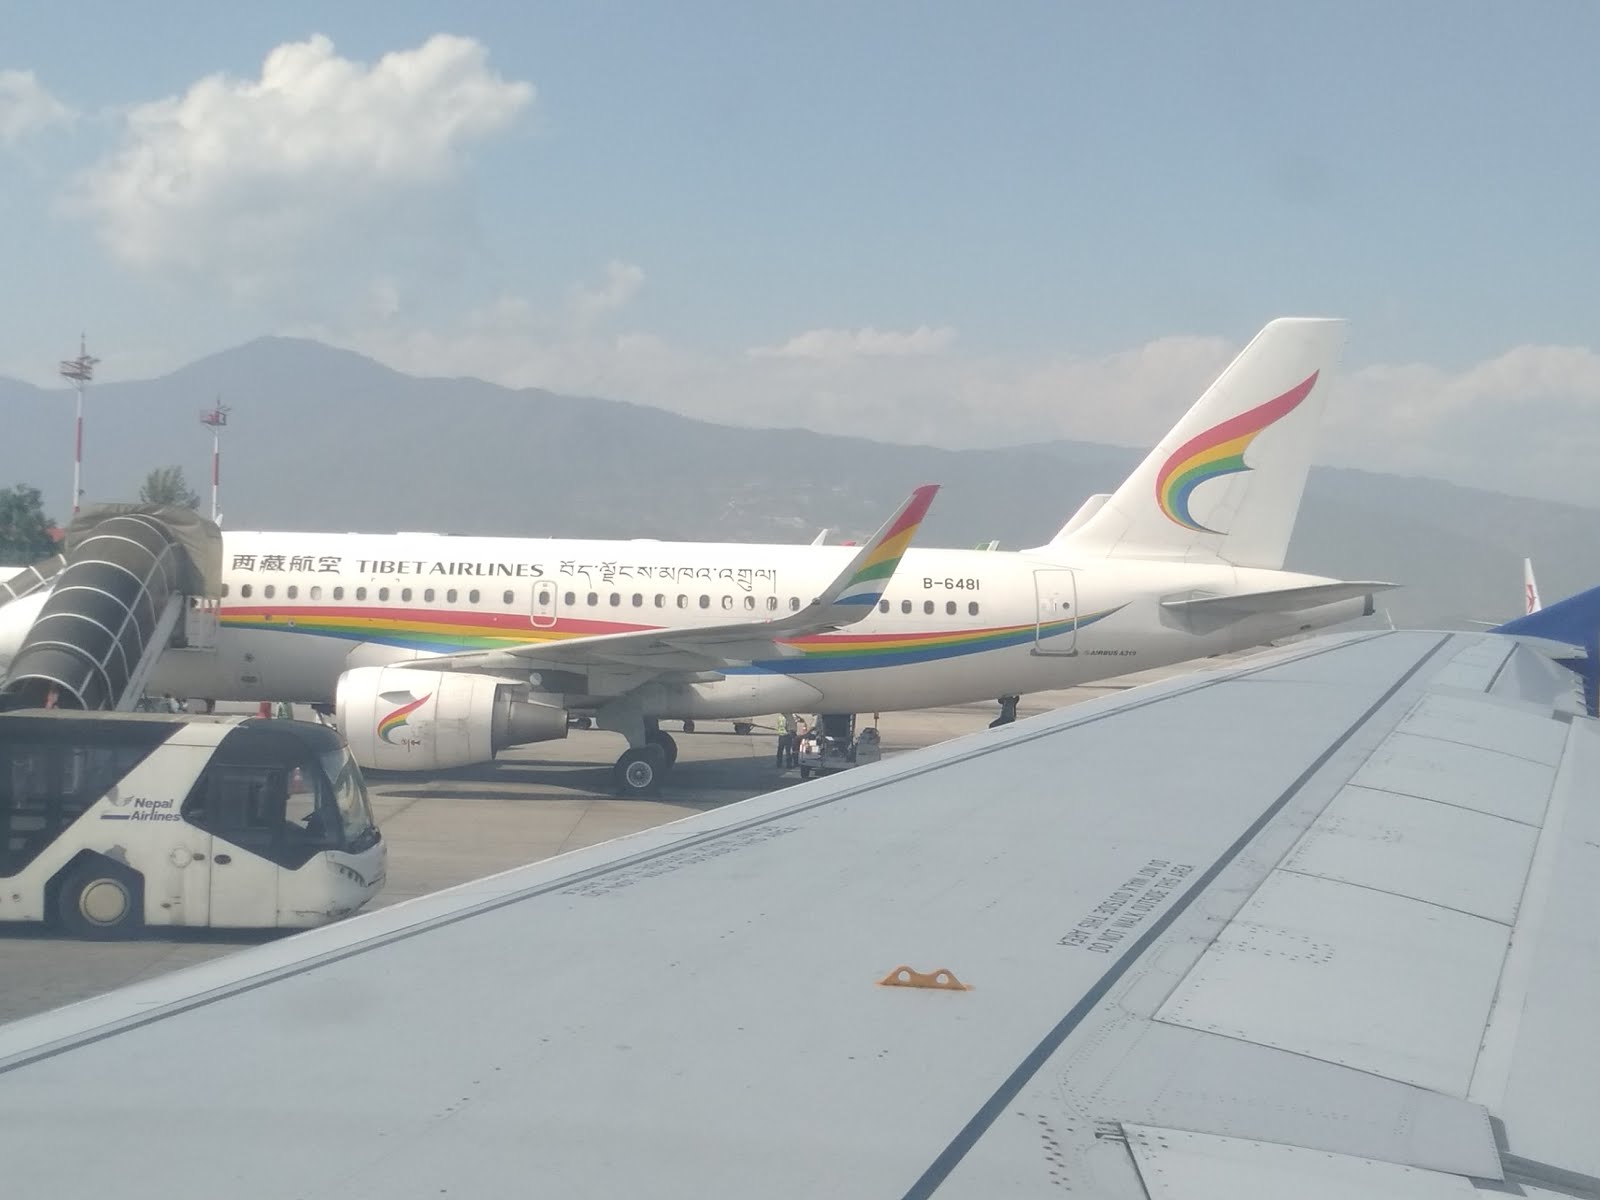 काठमांडू एरपोर्टवर  ...  दिल्लीला जाण्याच्या तयारीत      समोर तिबेट एअर लाईन्स चं विमान थांबलंय